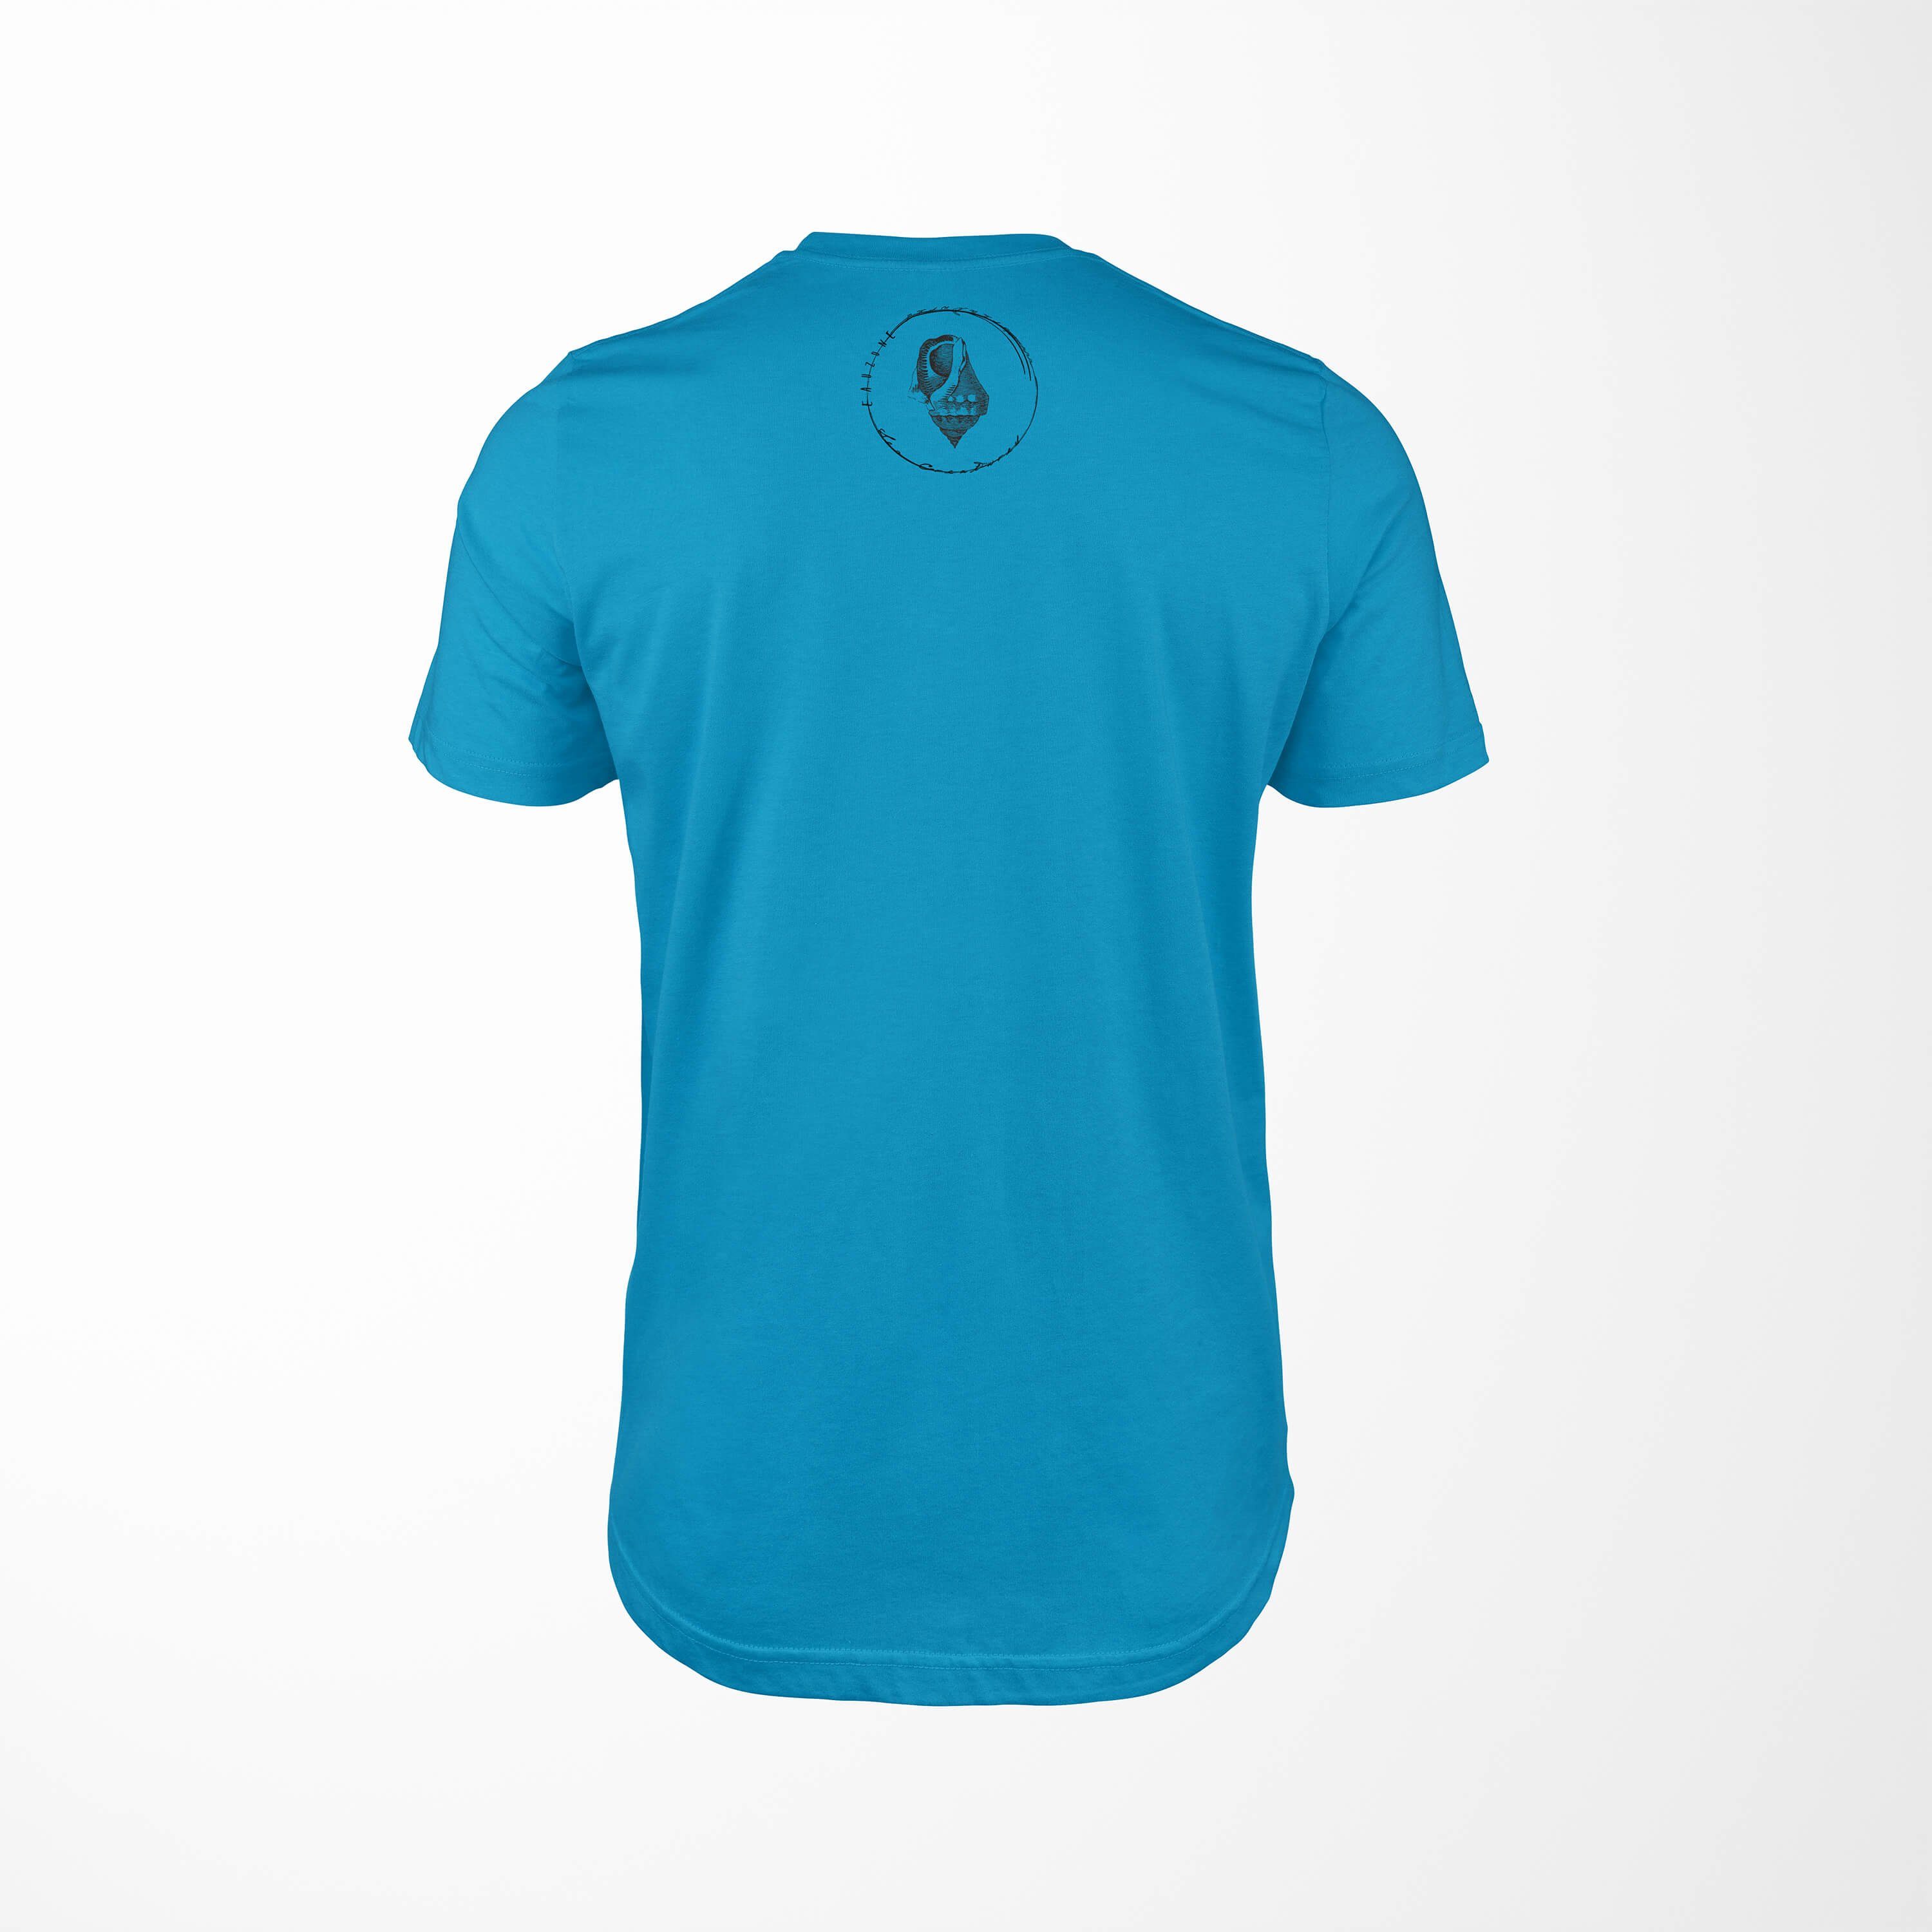 Sea / Fische T-Shirt - Sea und 028 Tiefsee Creatures, feine Art Schnitt Struktur T-Shirt Atoll Serie: sportlicher Sinus